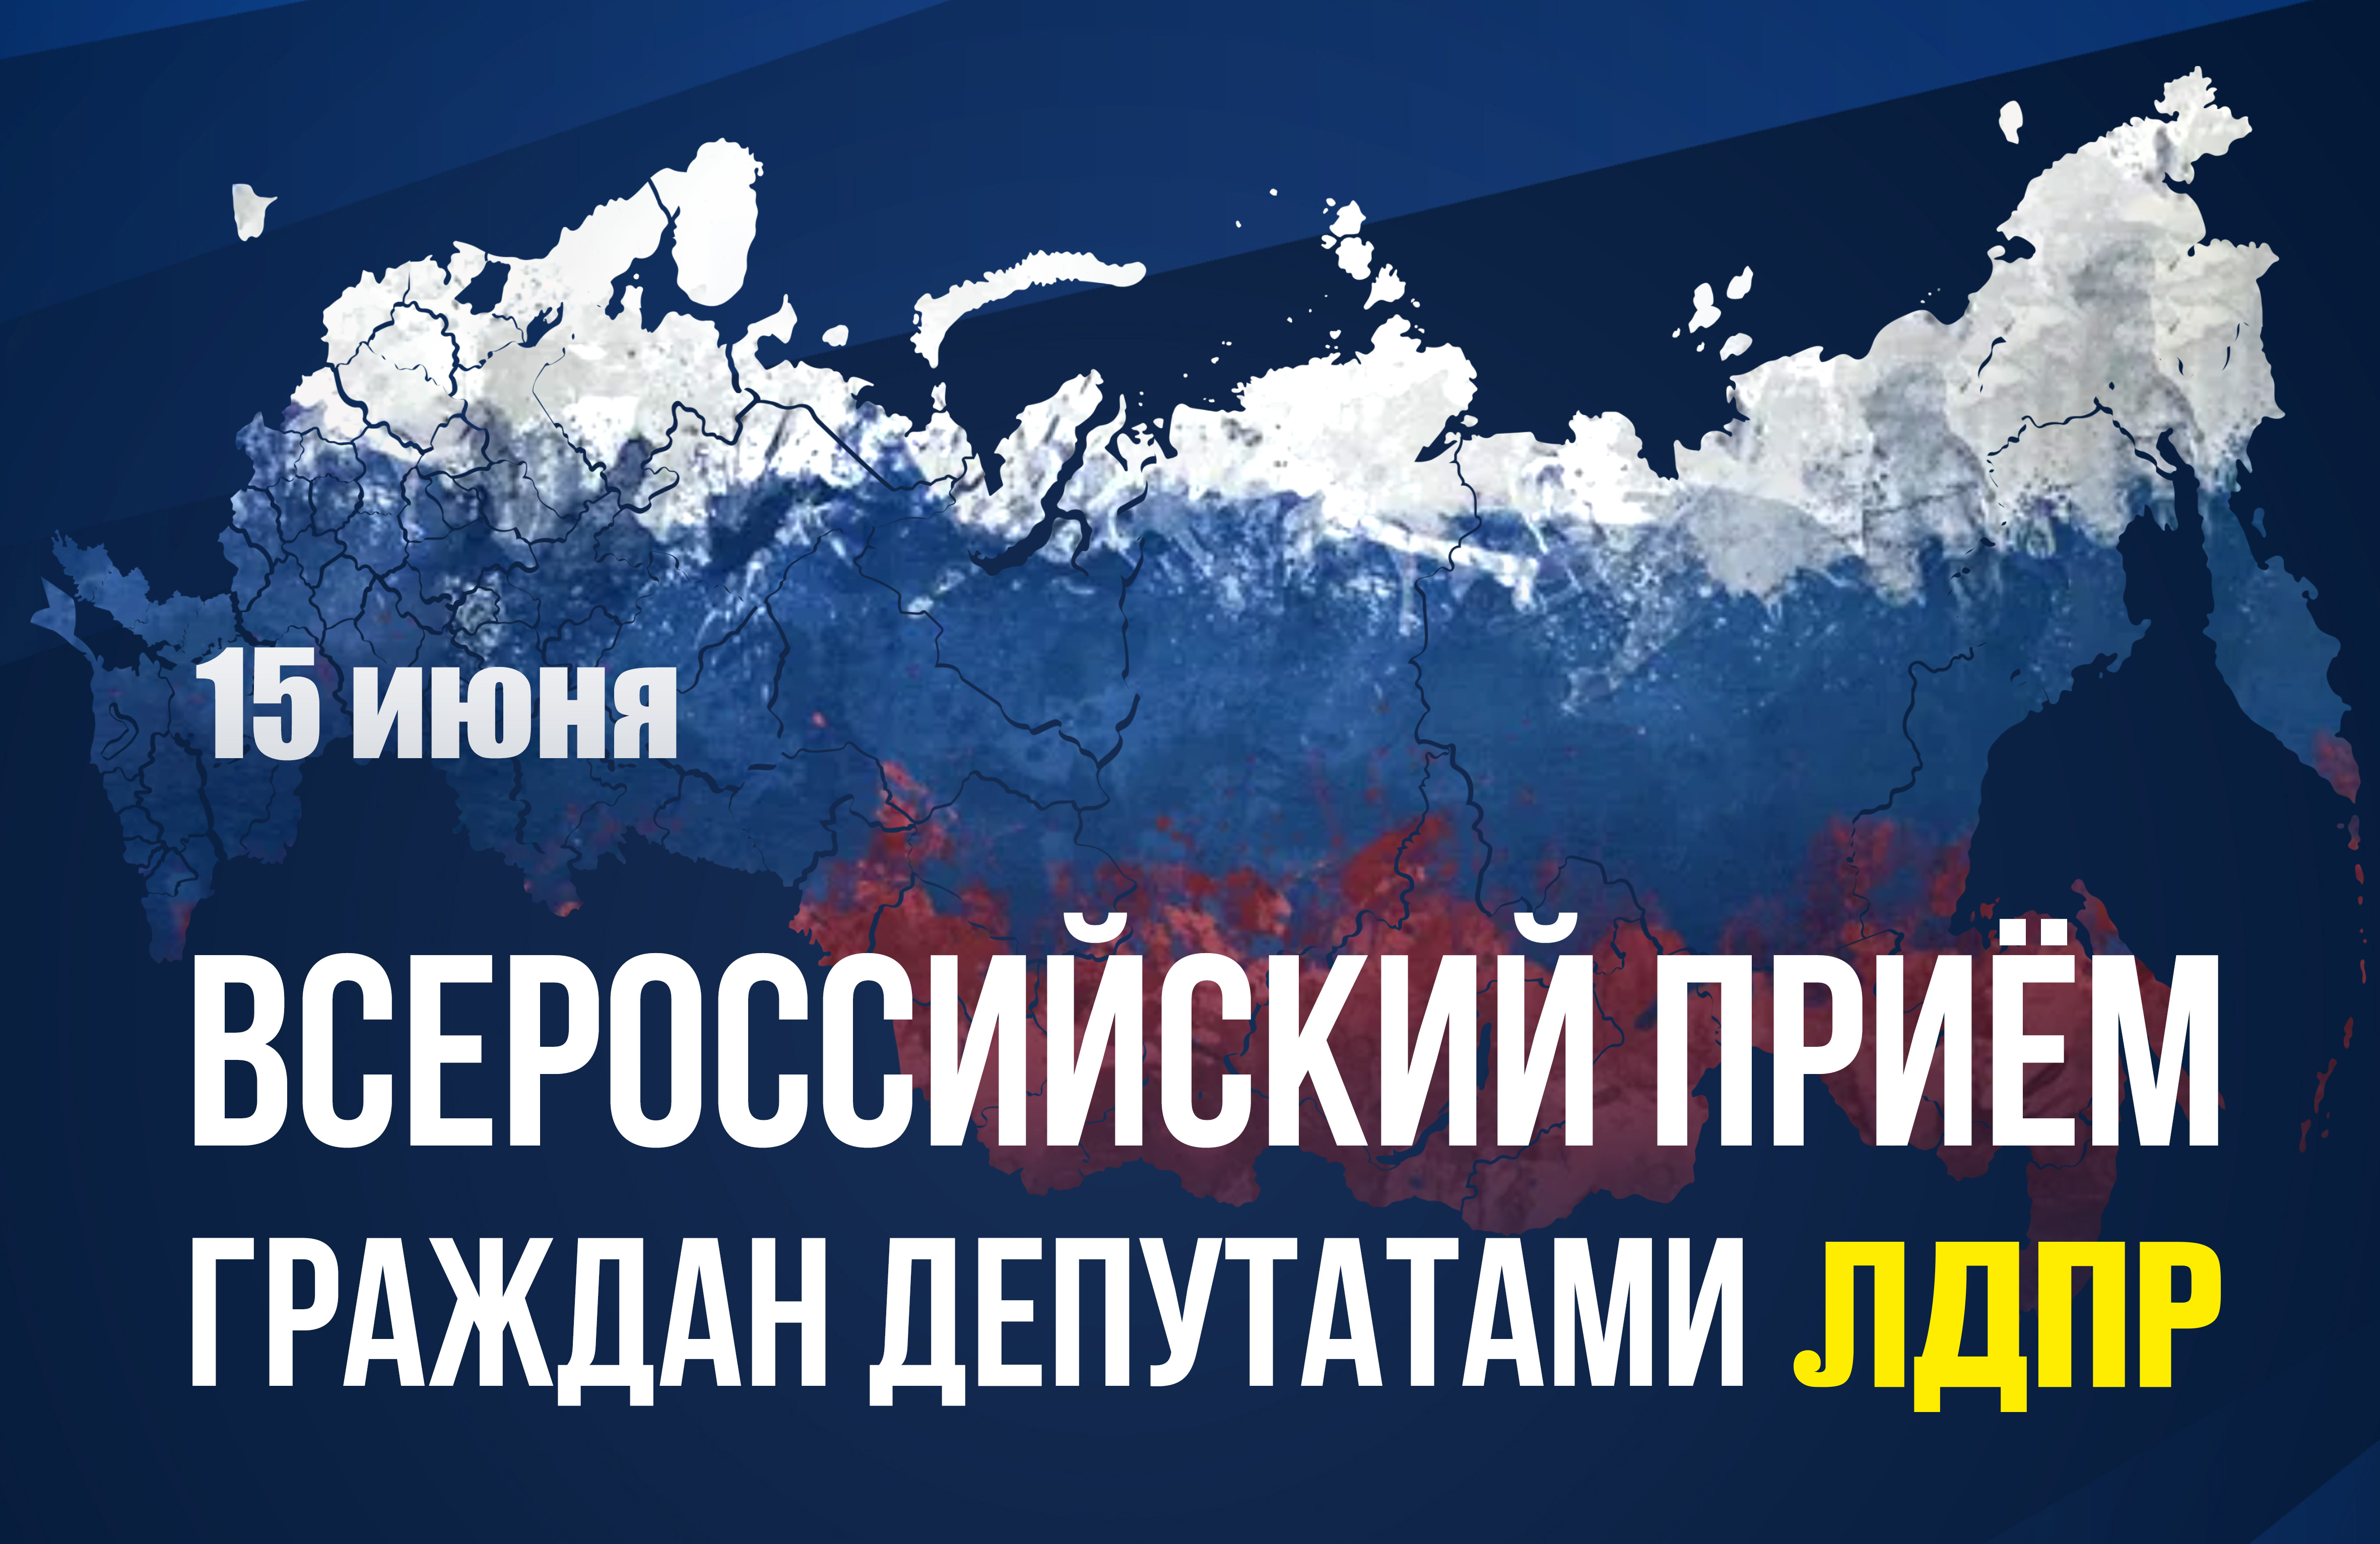 Депутаты ЛДПР проведут Всероссийский приём граждан 15 июня